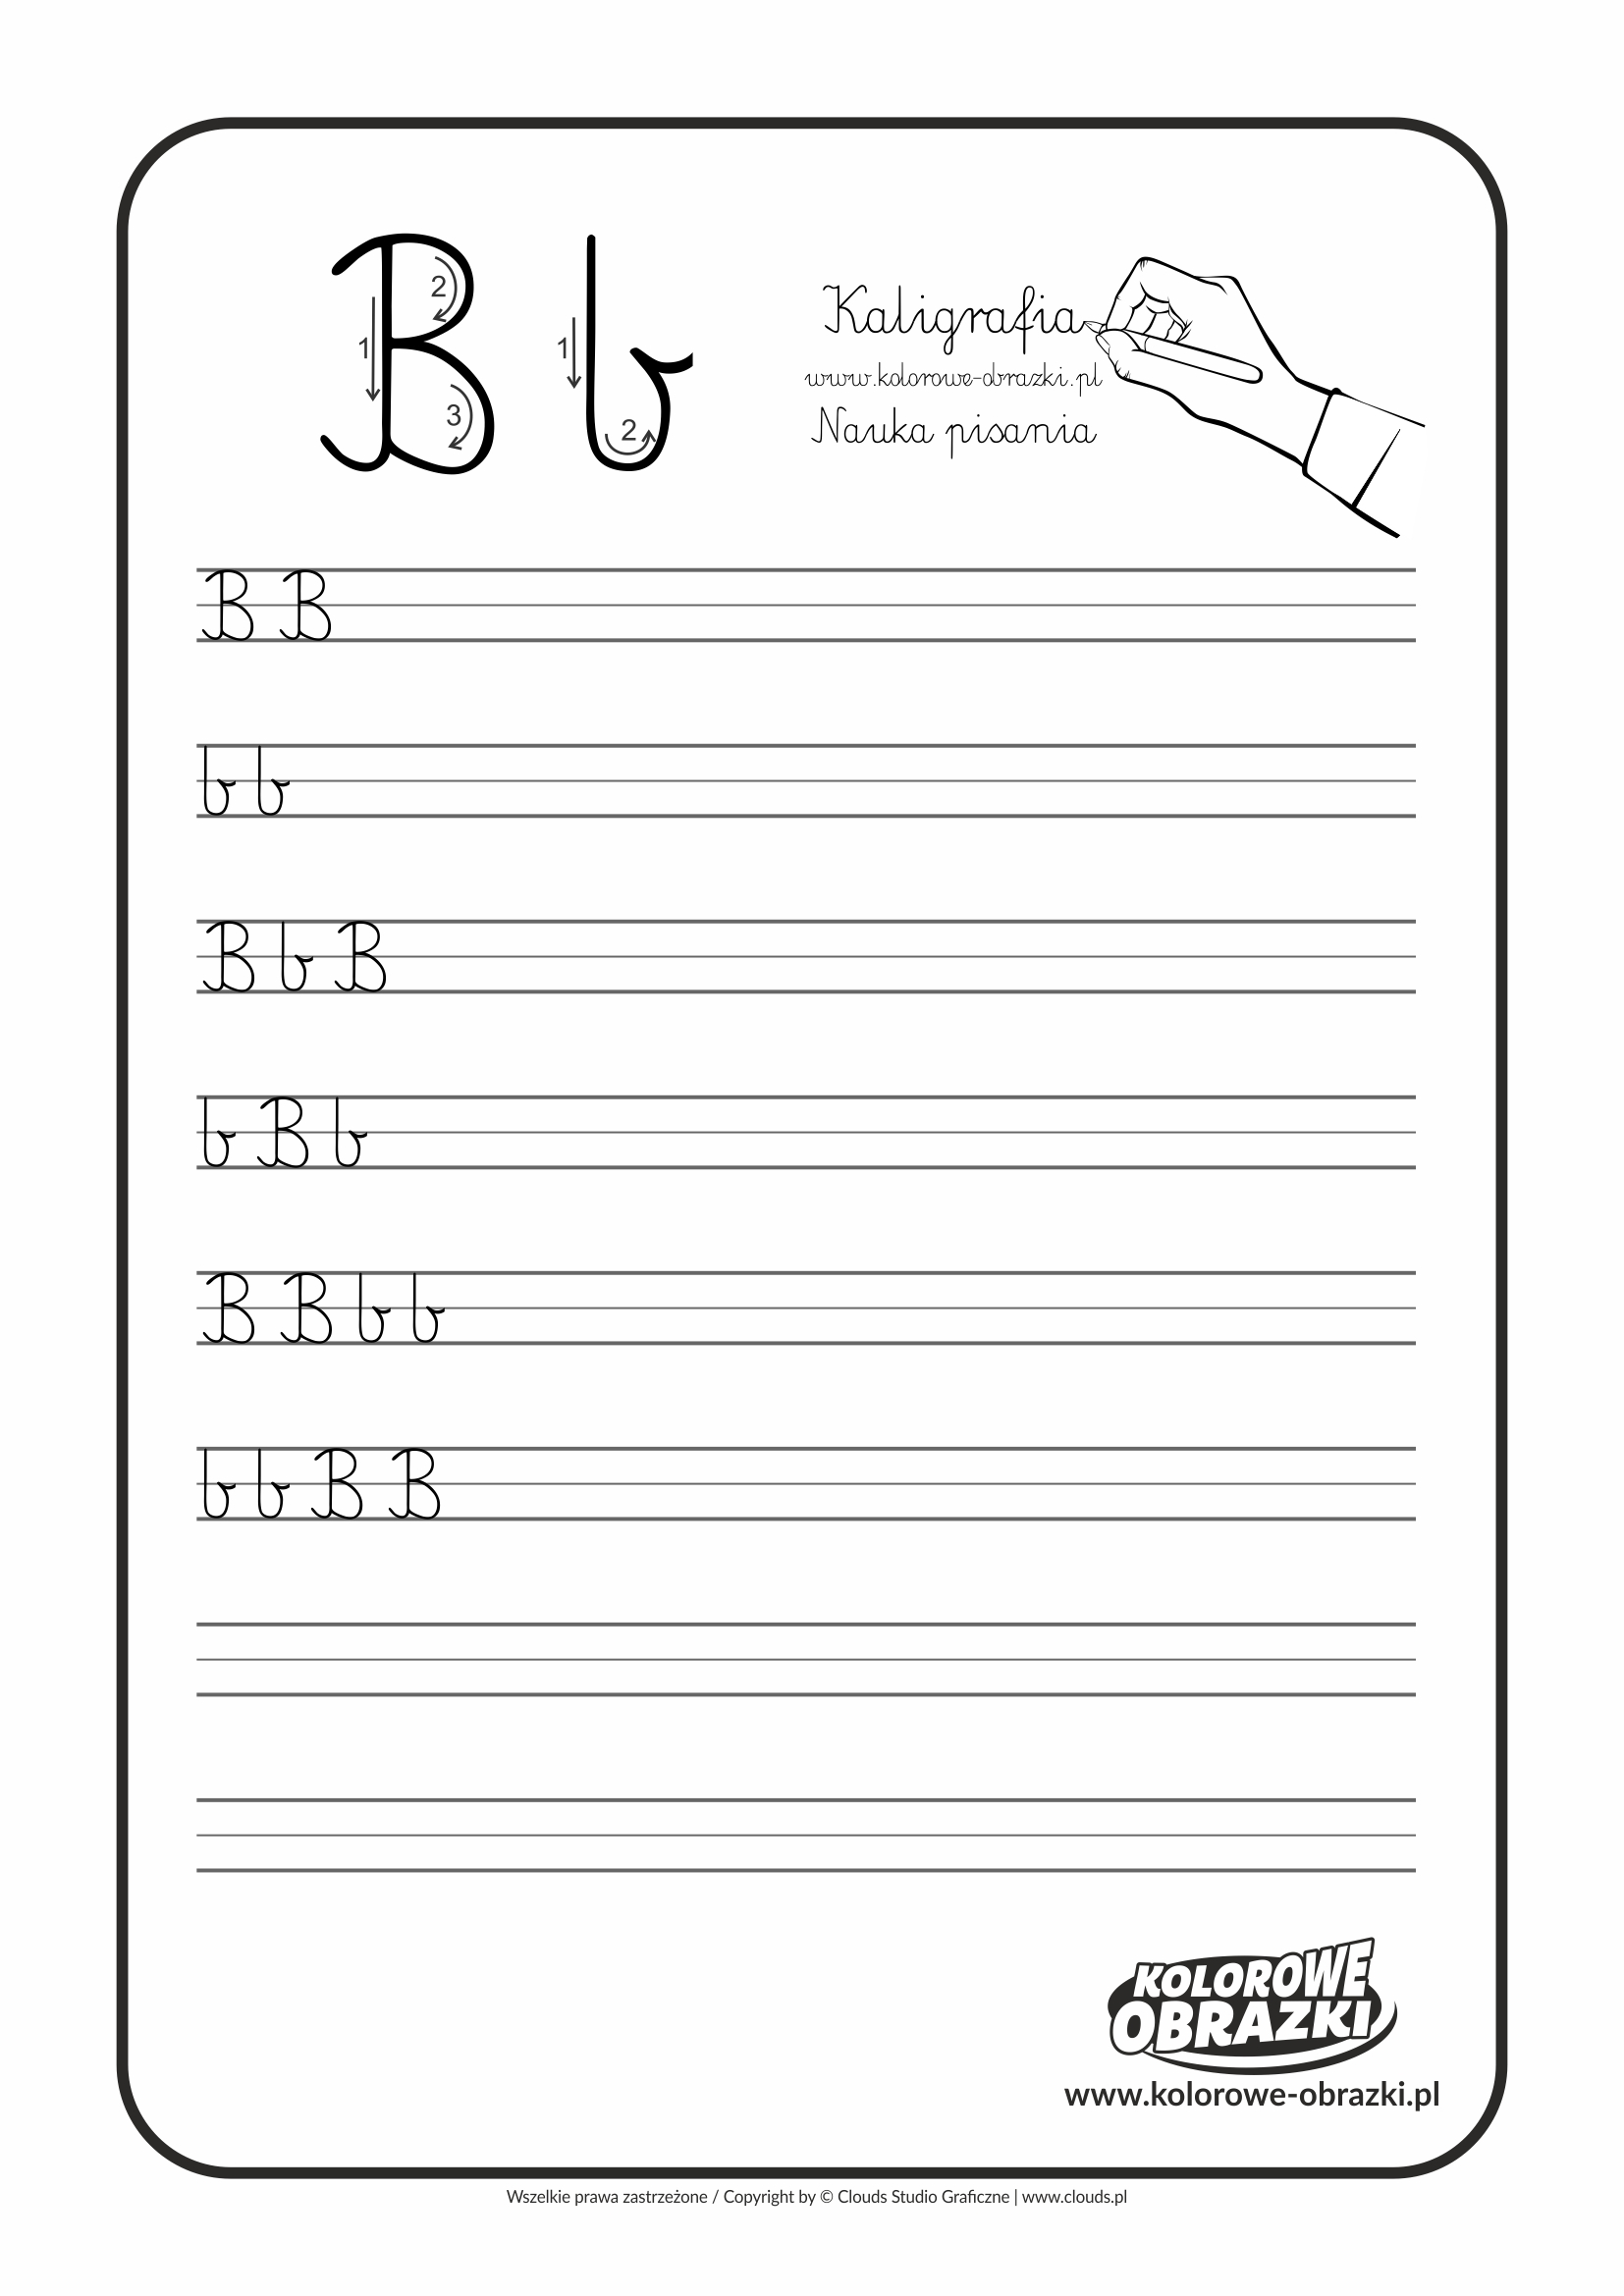 Kaligrafia dla dzieci - Ćwiczenia kaligraficzne / Litera B. Nauka pisania litery B